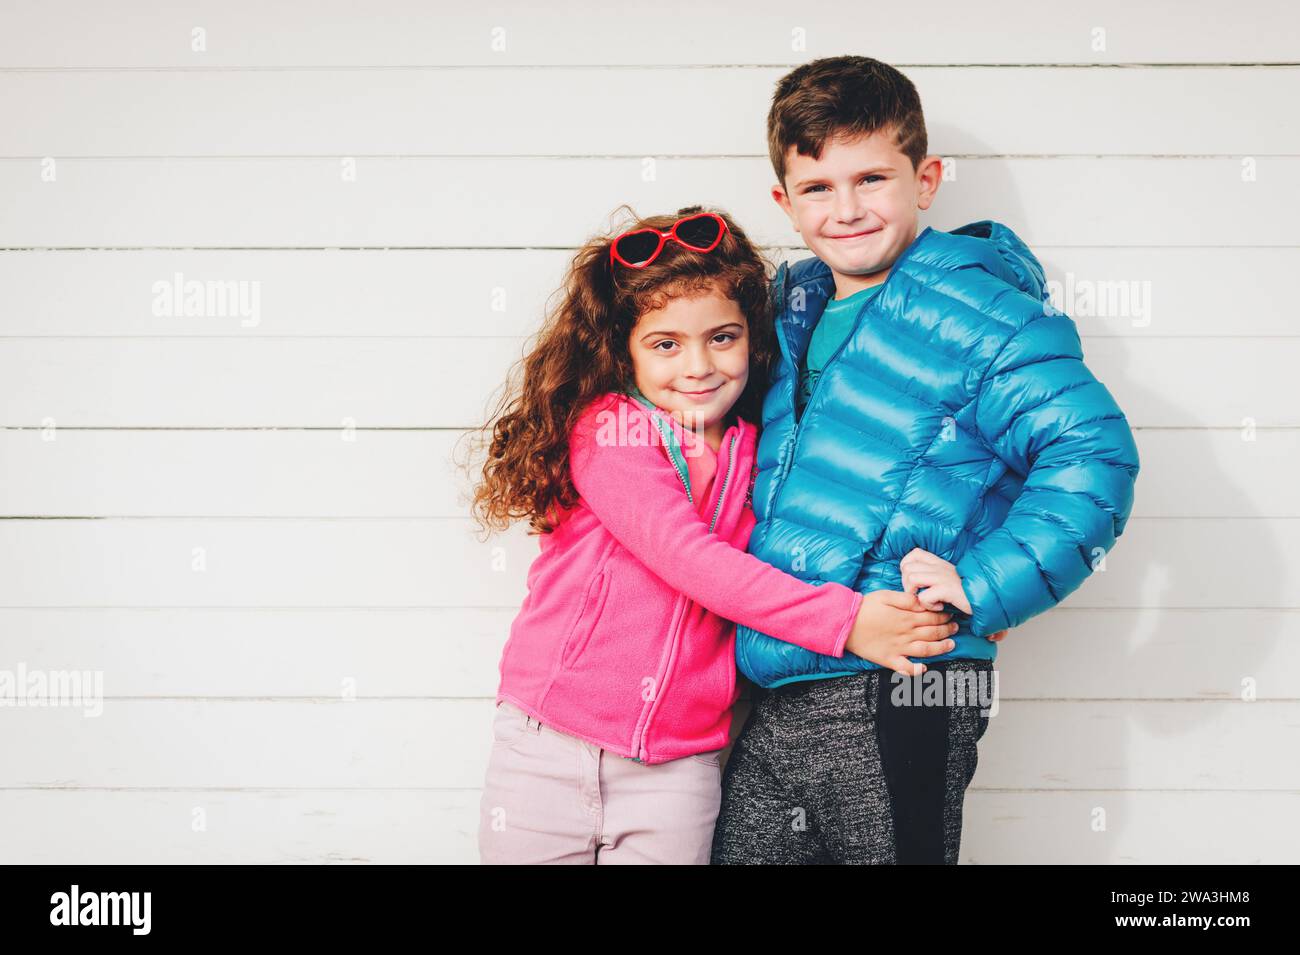 Das niedliche Kleinkind Mädchen und ihr großer Bruder posieren draußen vor weißem Holzhintergrund, tragen eine rosafarbene Fleecejacke und einen blauen wattierten Mantel Stockfoto